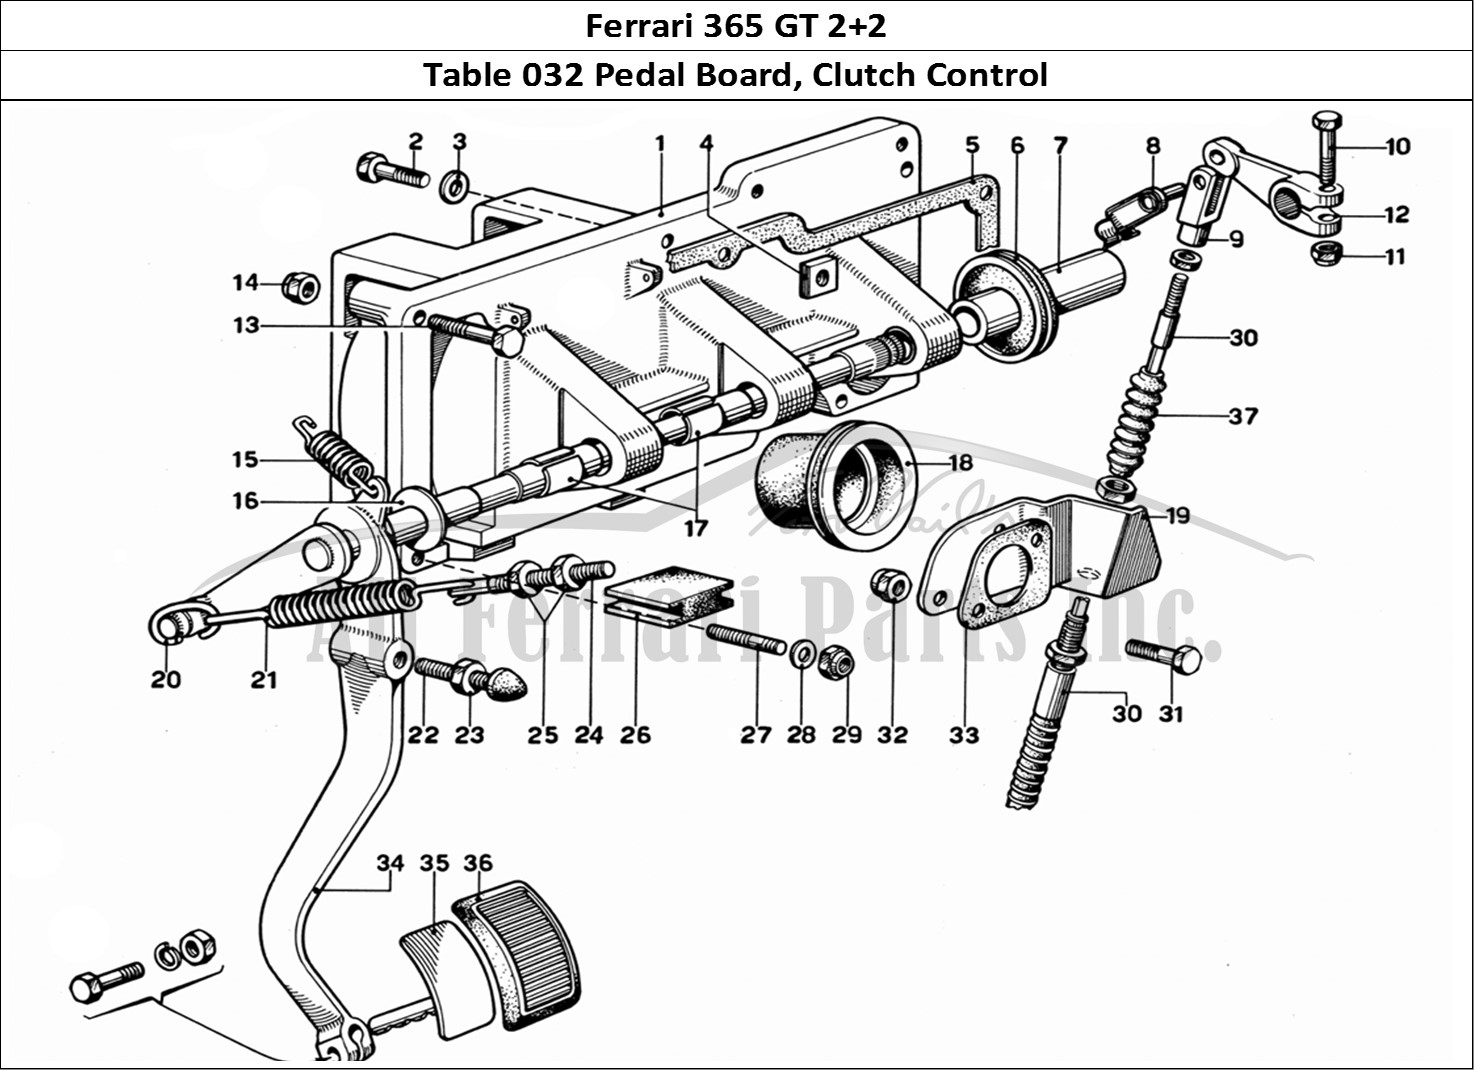 Ferrari Parts Ferrari 365 GT 2+2 (Mechanical) Page 032 Pedal Board - Clutch Cont